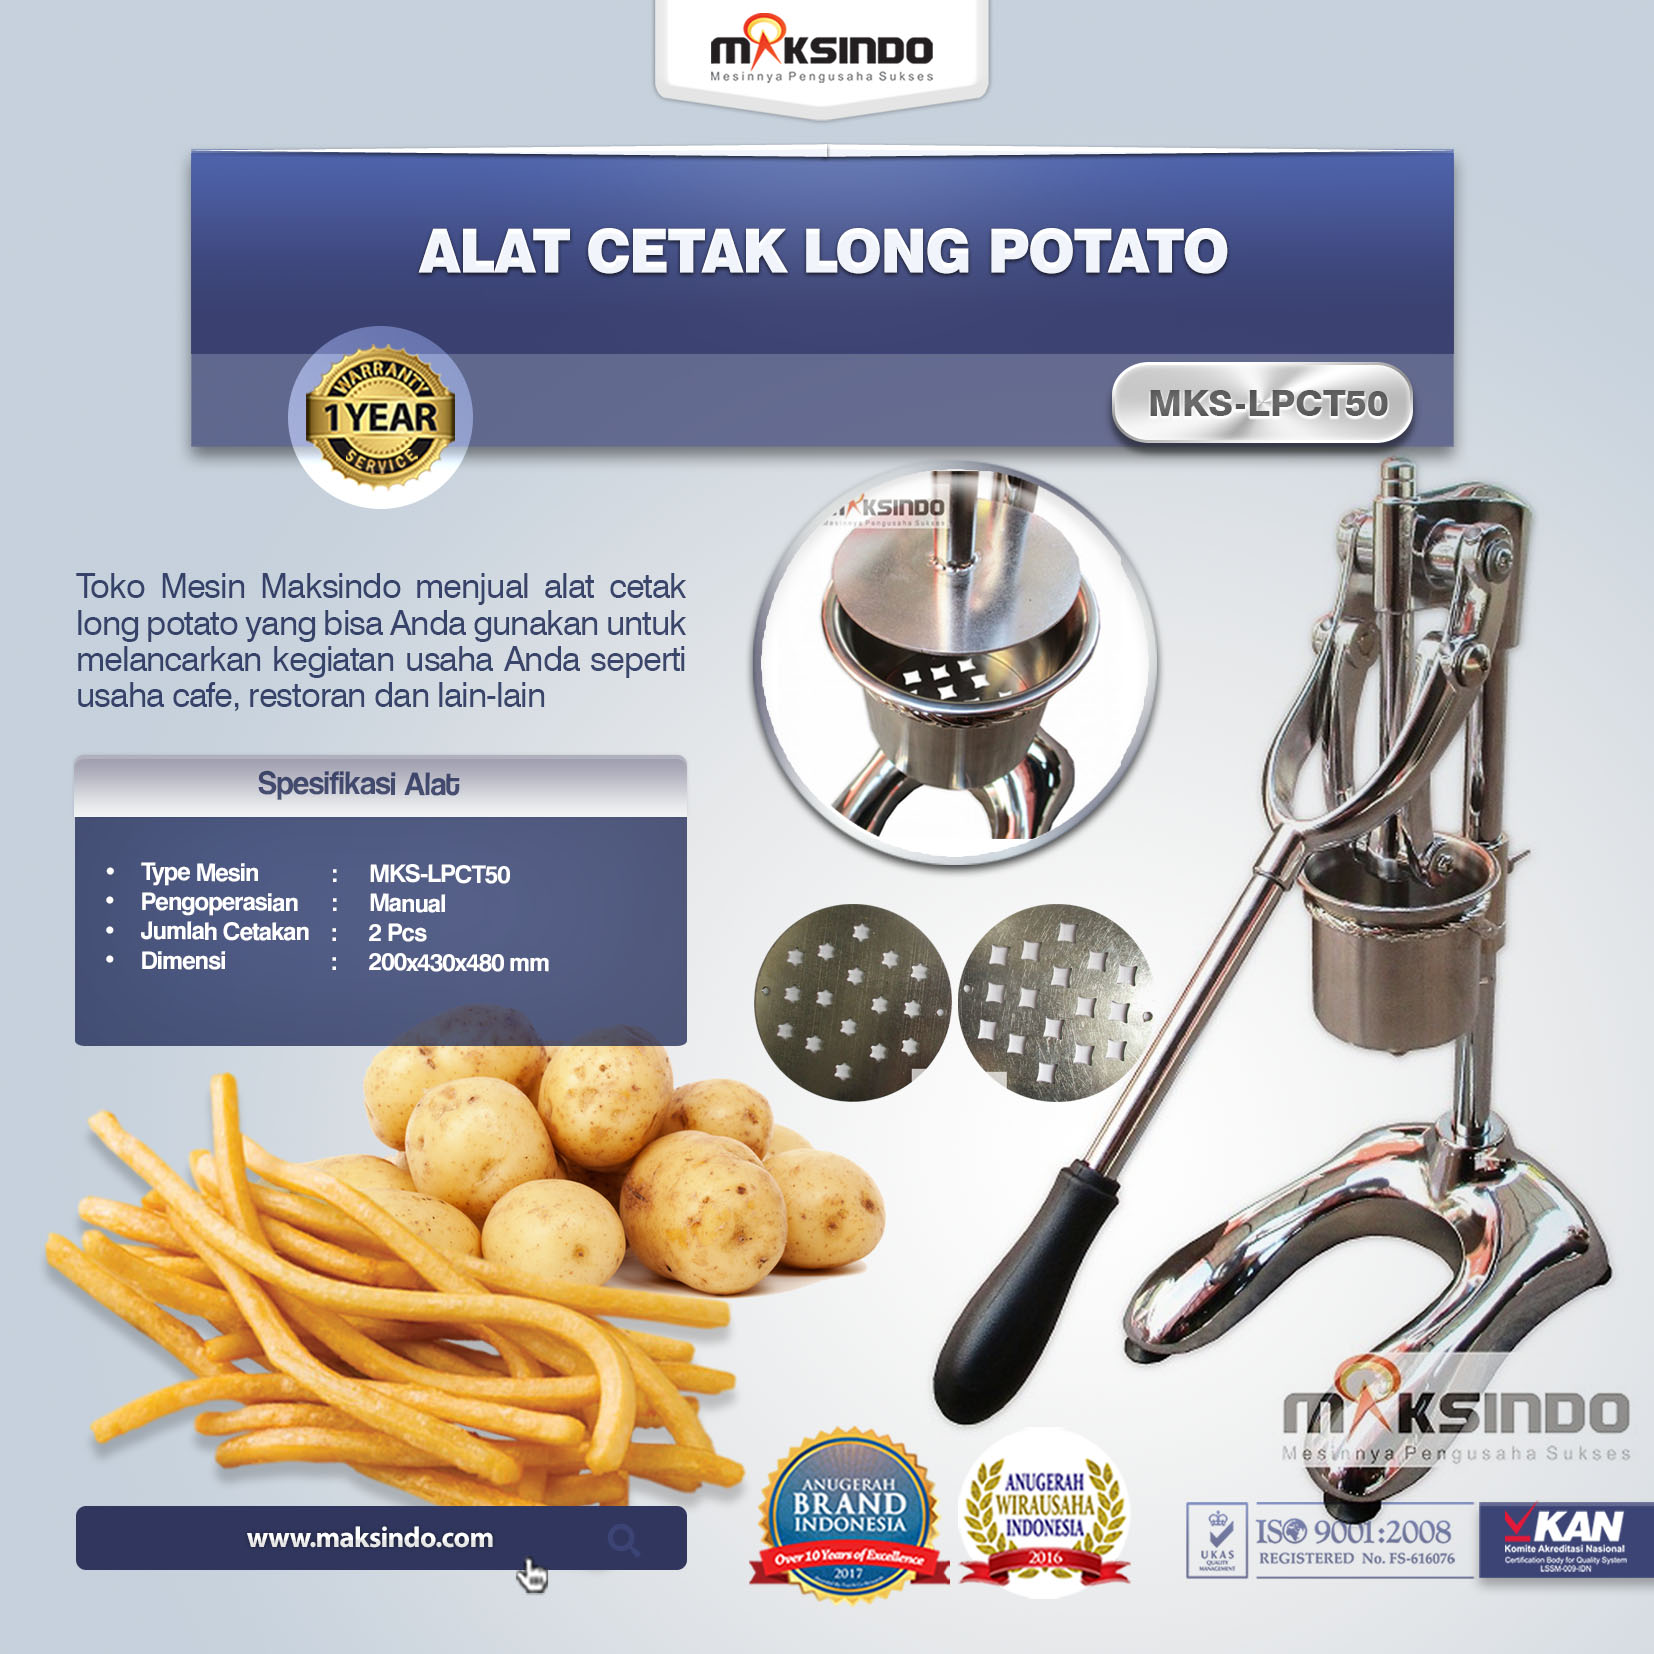 Jual Alat Cetak Long Potato MKS-LPCT50 di Pekanbaru